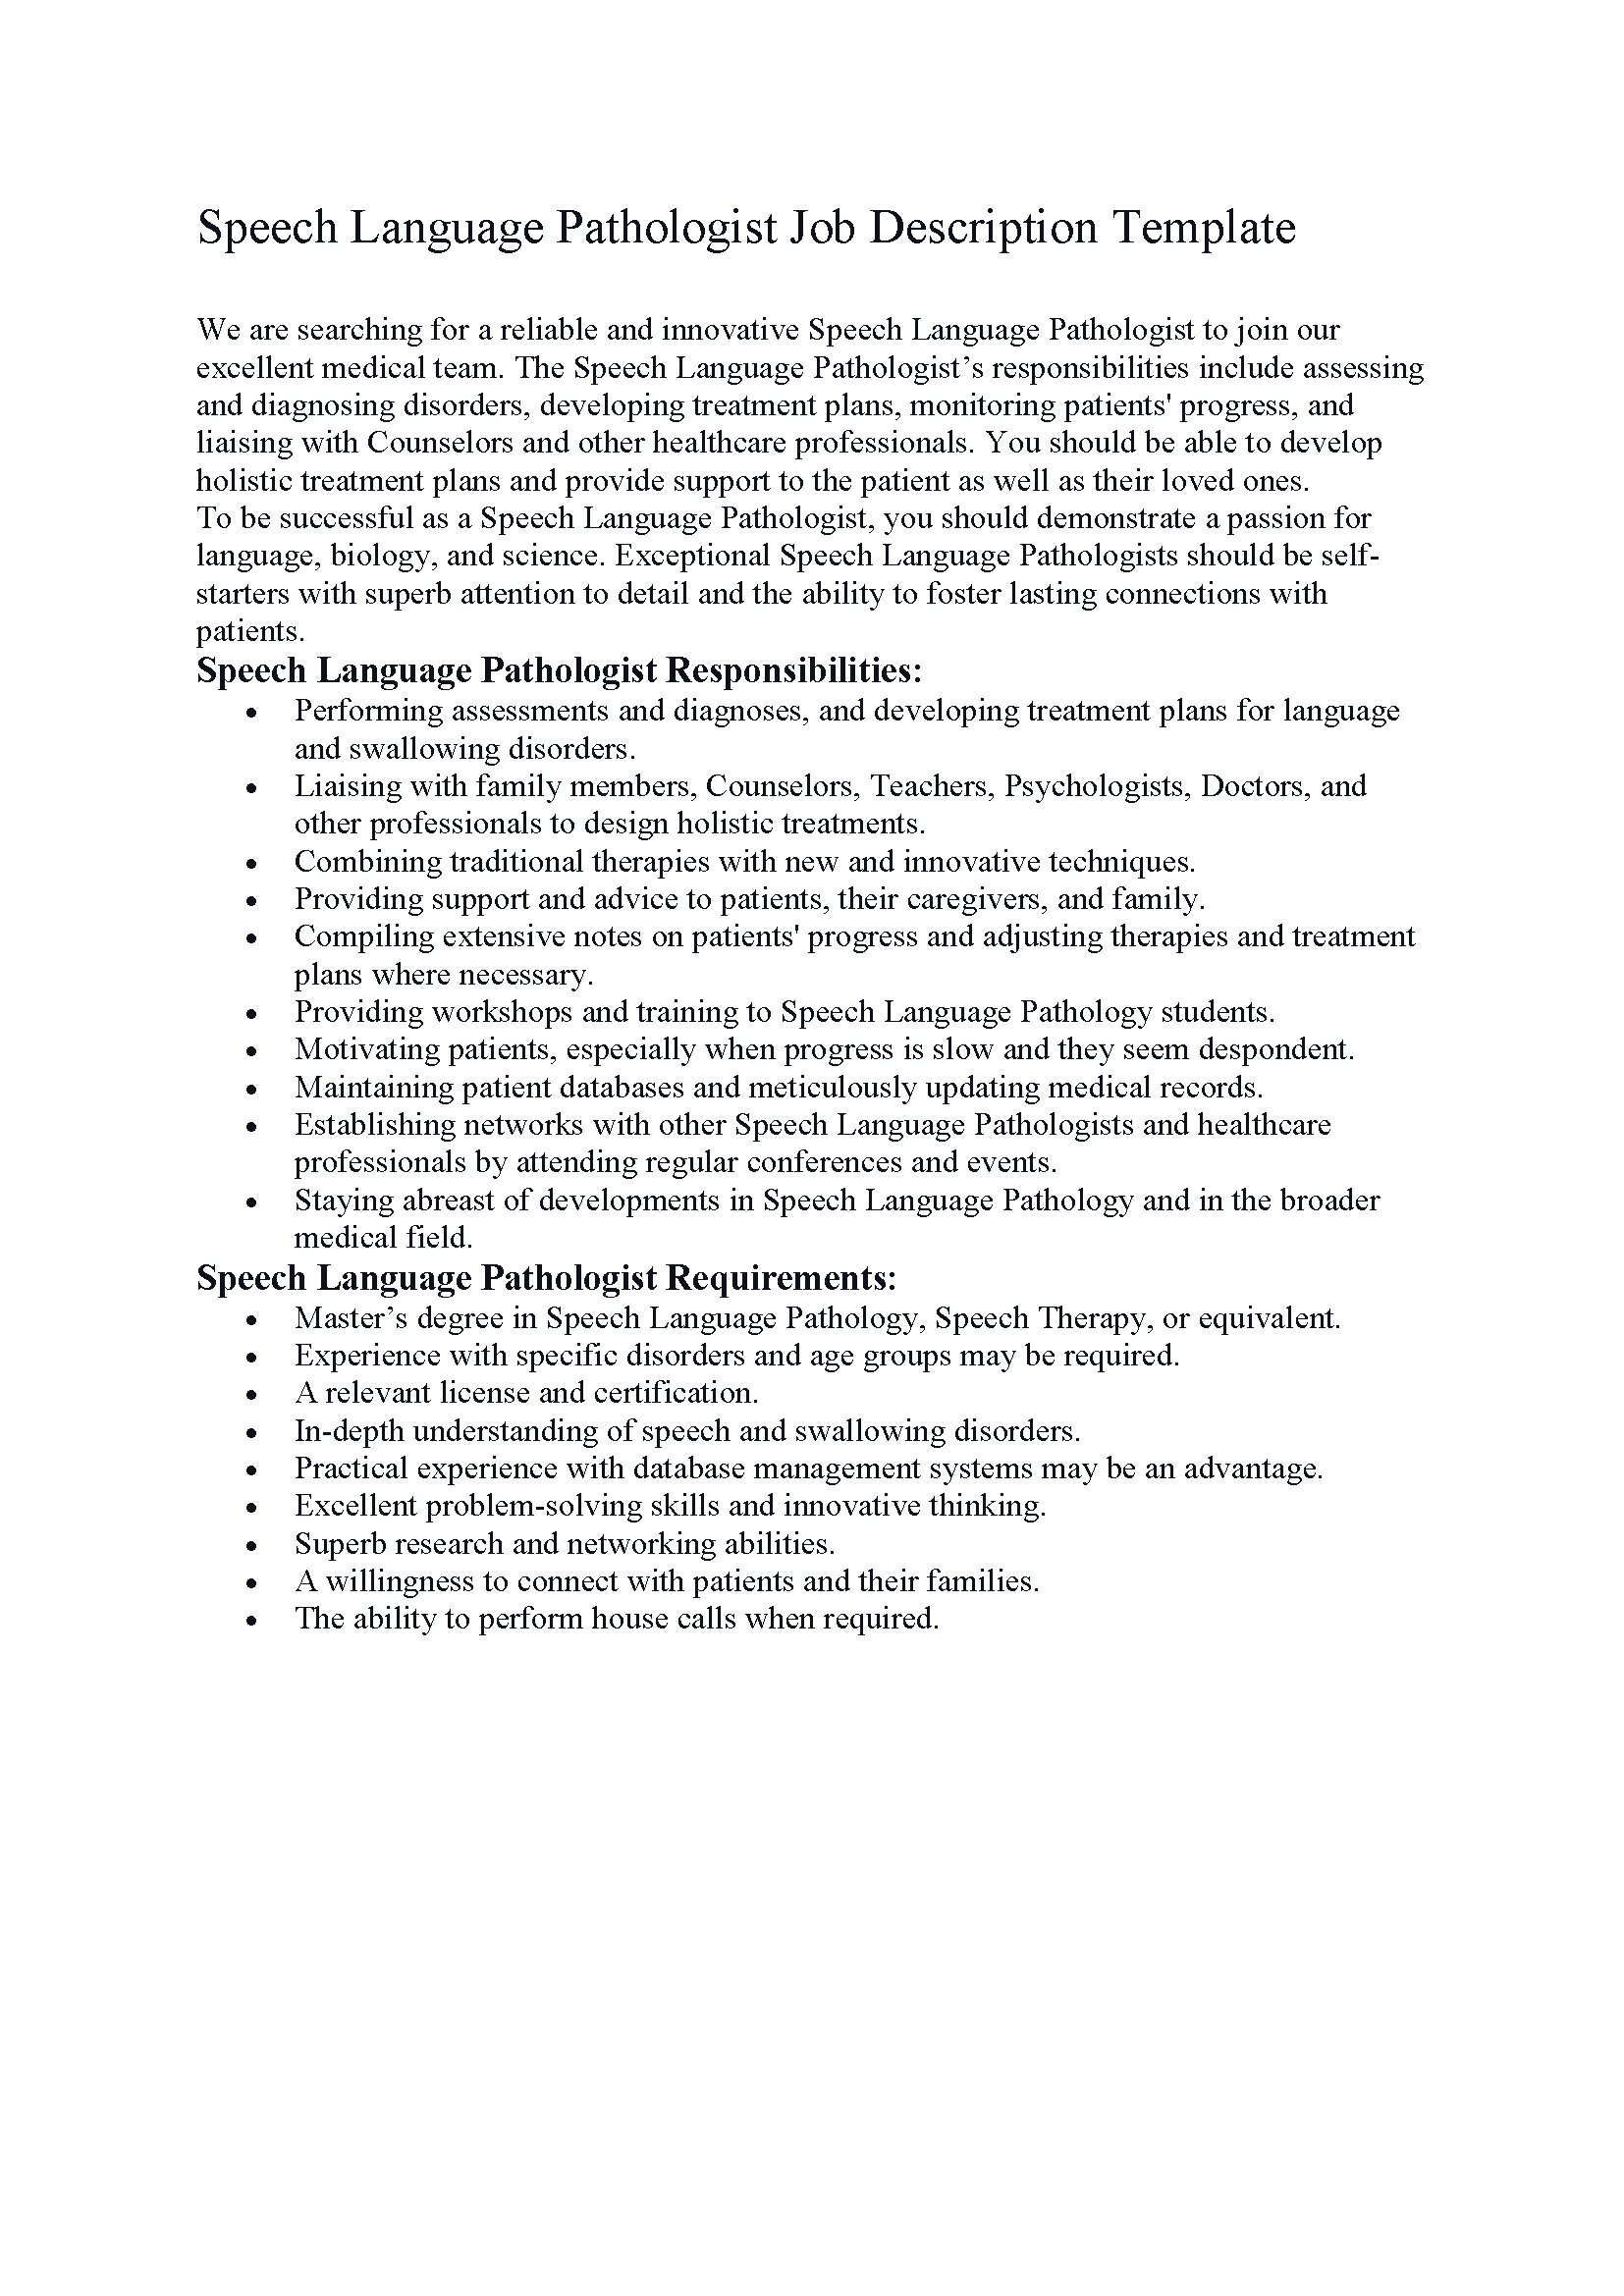 Speech Language Pathologist Job Description Template